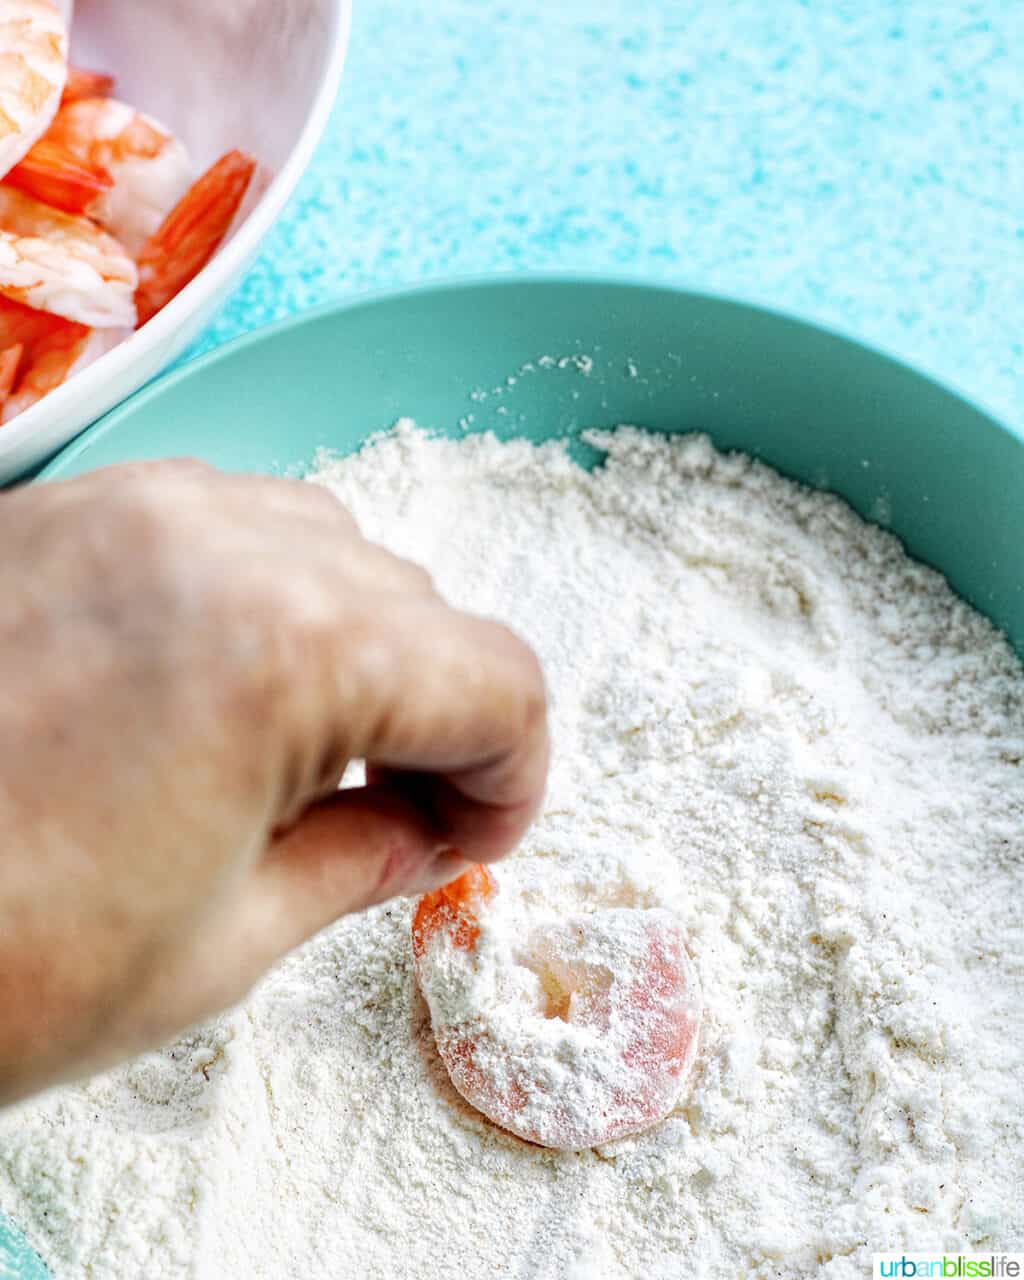 dredging shrimp in flour mixture